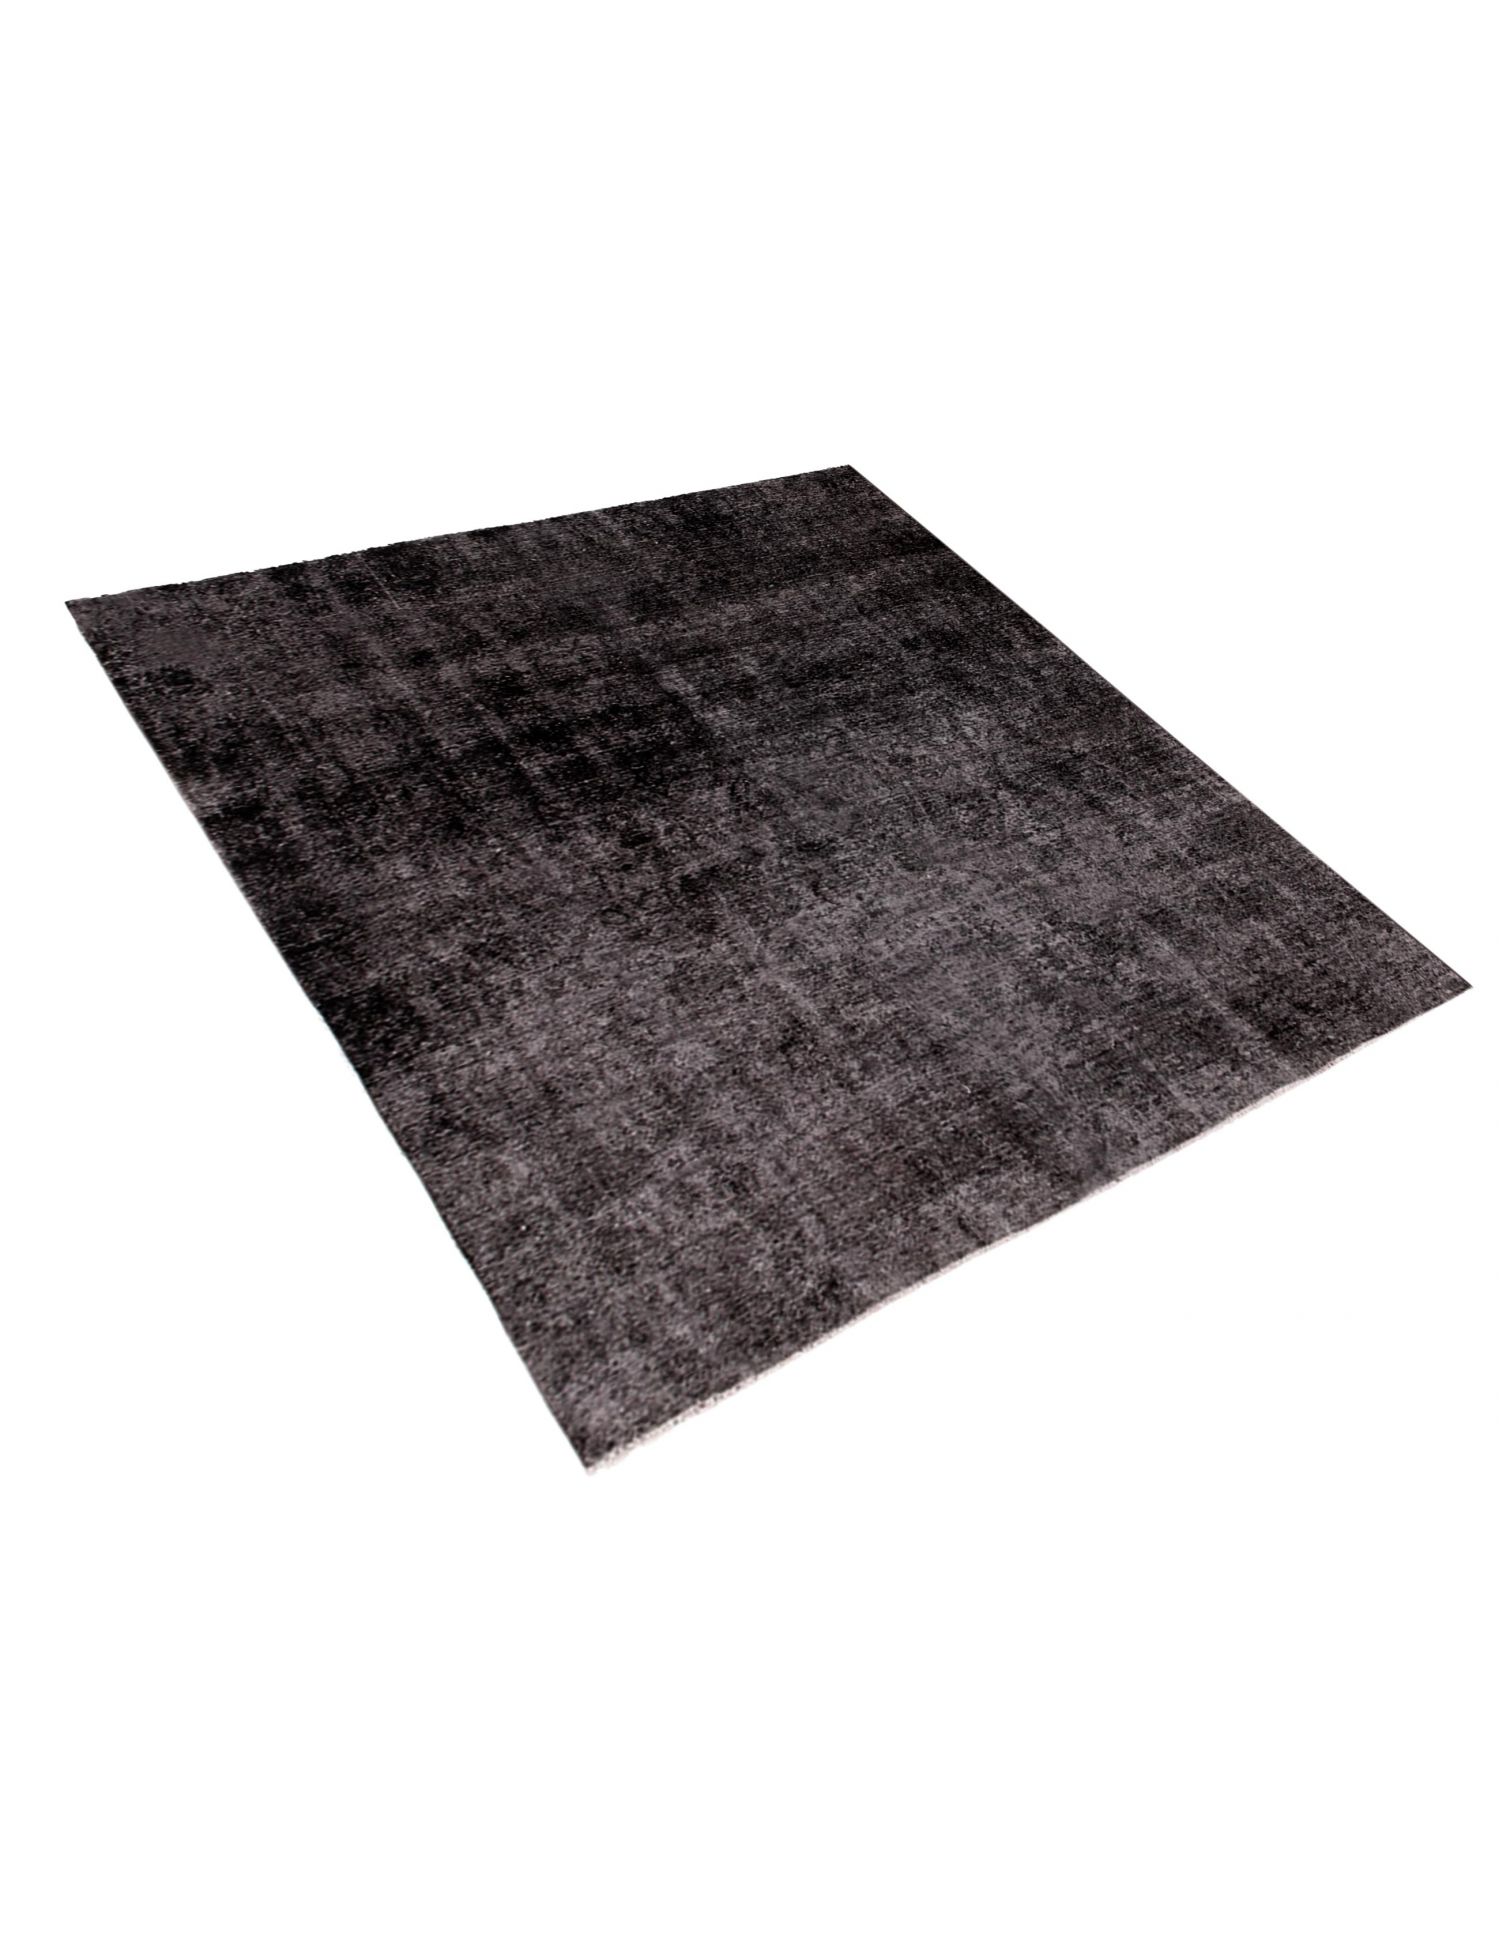 Persian Vintage Carpet  black <br/>260 x 265 cm